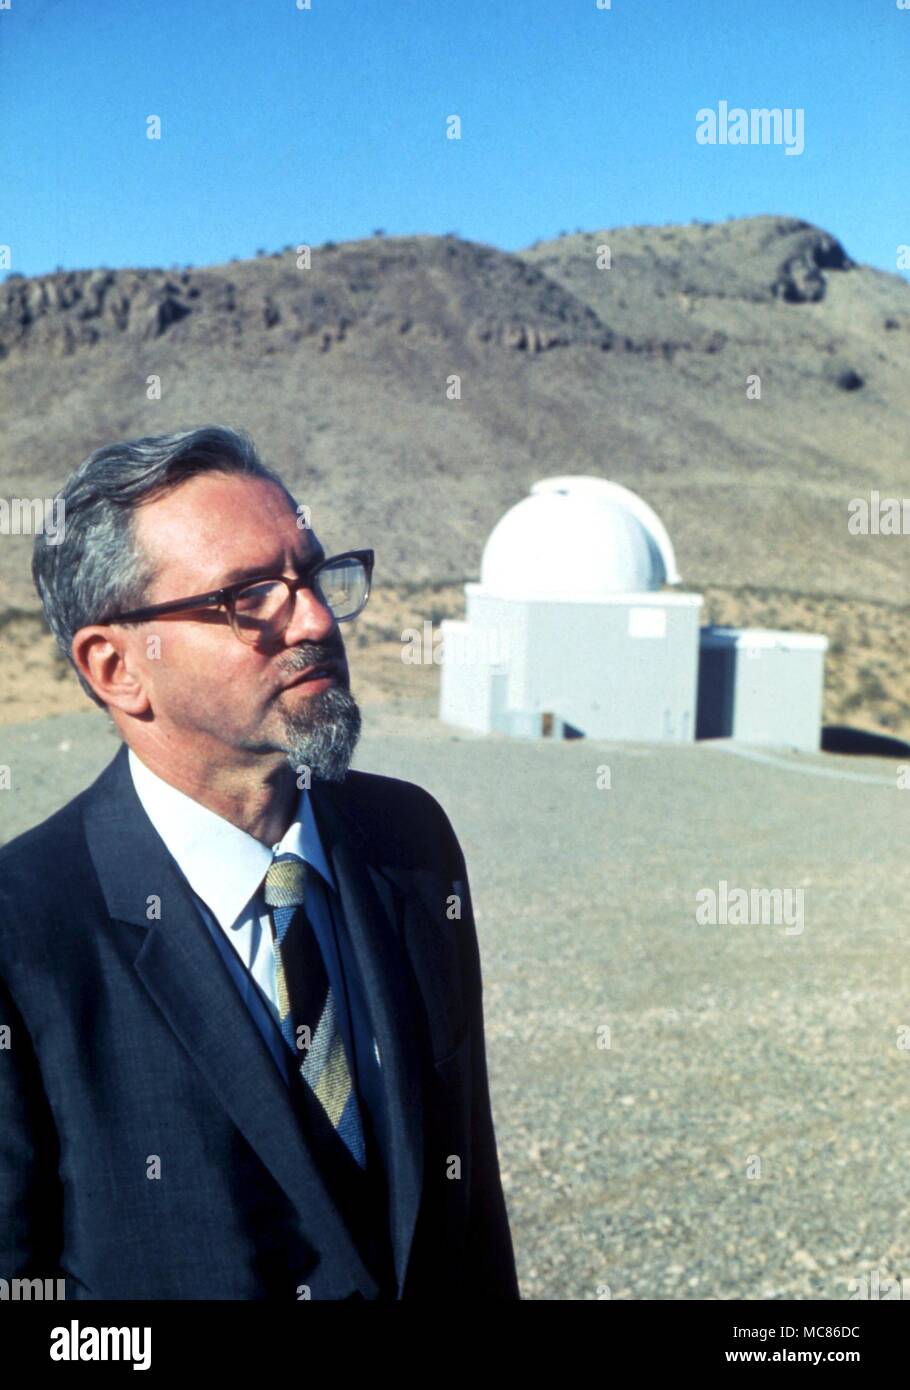 Ovni - objet volant non identifié Dr Allen Hyneck J, un astronome de l'Université du nord-ouest de temps, USA, travaillant sur les rapports d'OVNIS officiellement pour le projet Blue Book. Fondée Center for UFO Studies, 1973 Banque D'Images